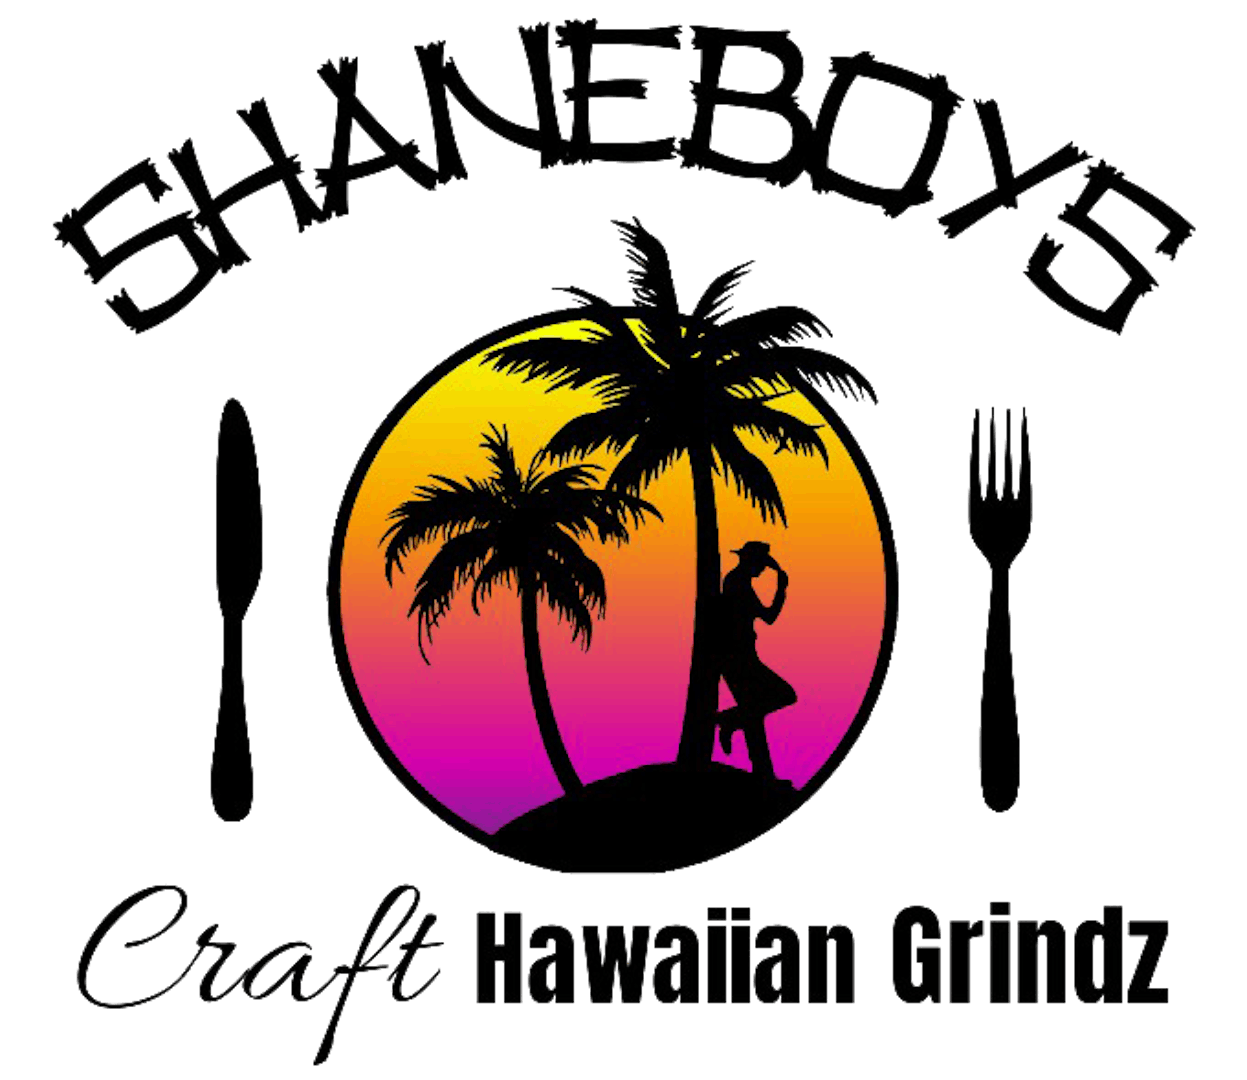 Shaneboy's Craft Hawaiian Grindz